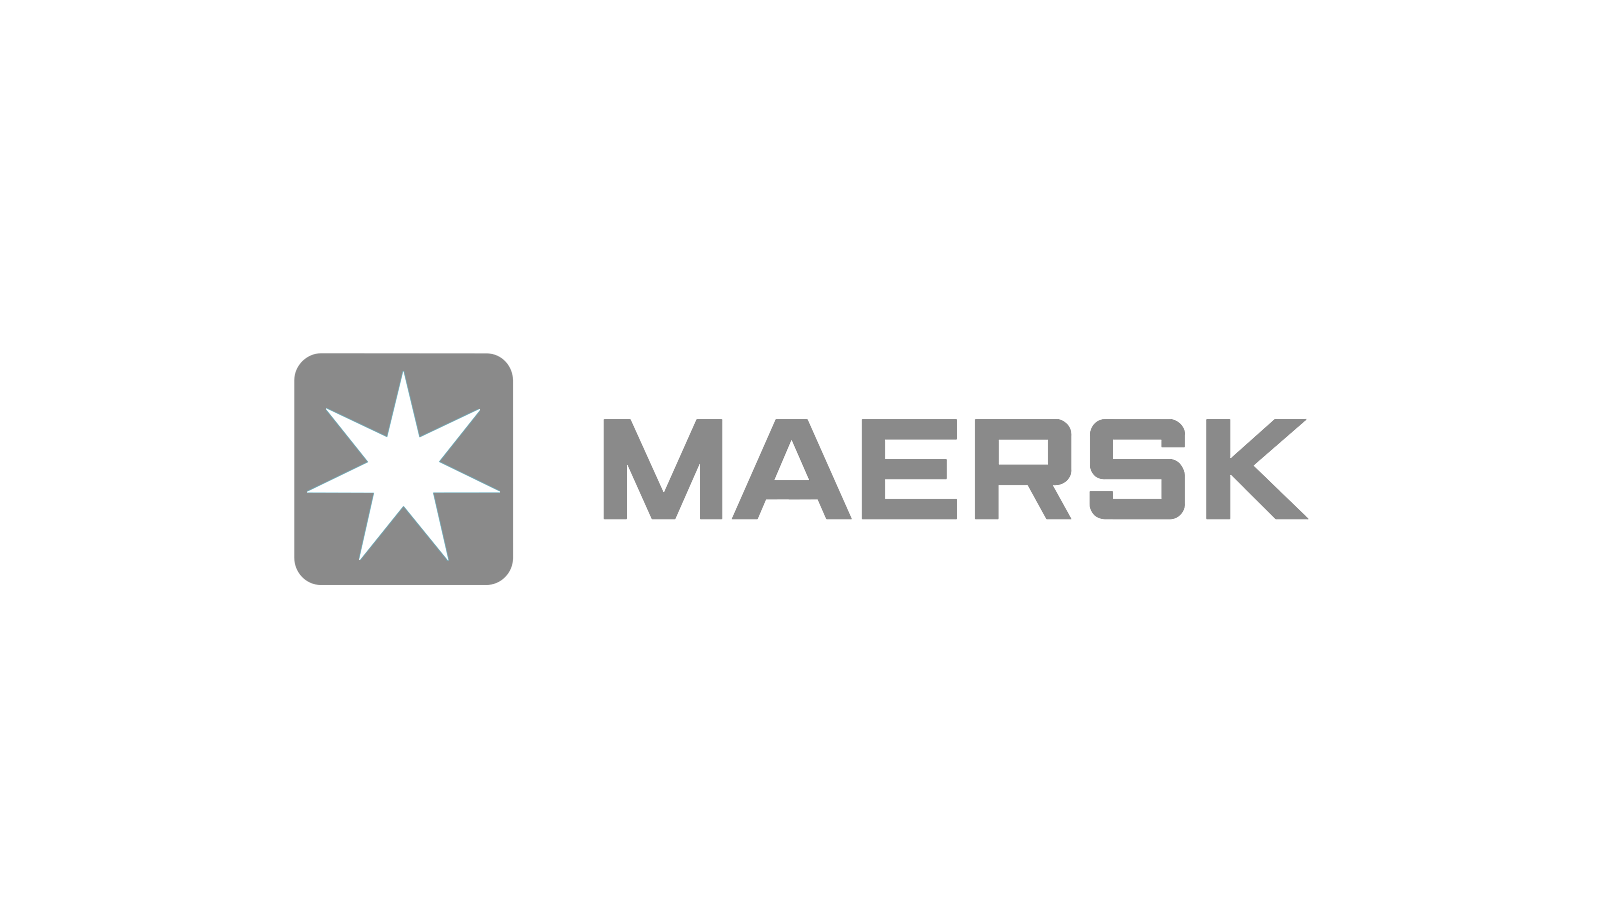 Maerskpng